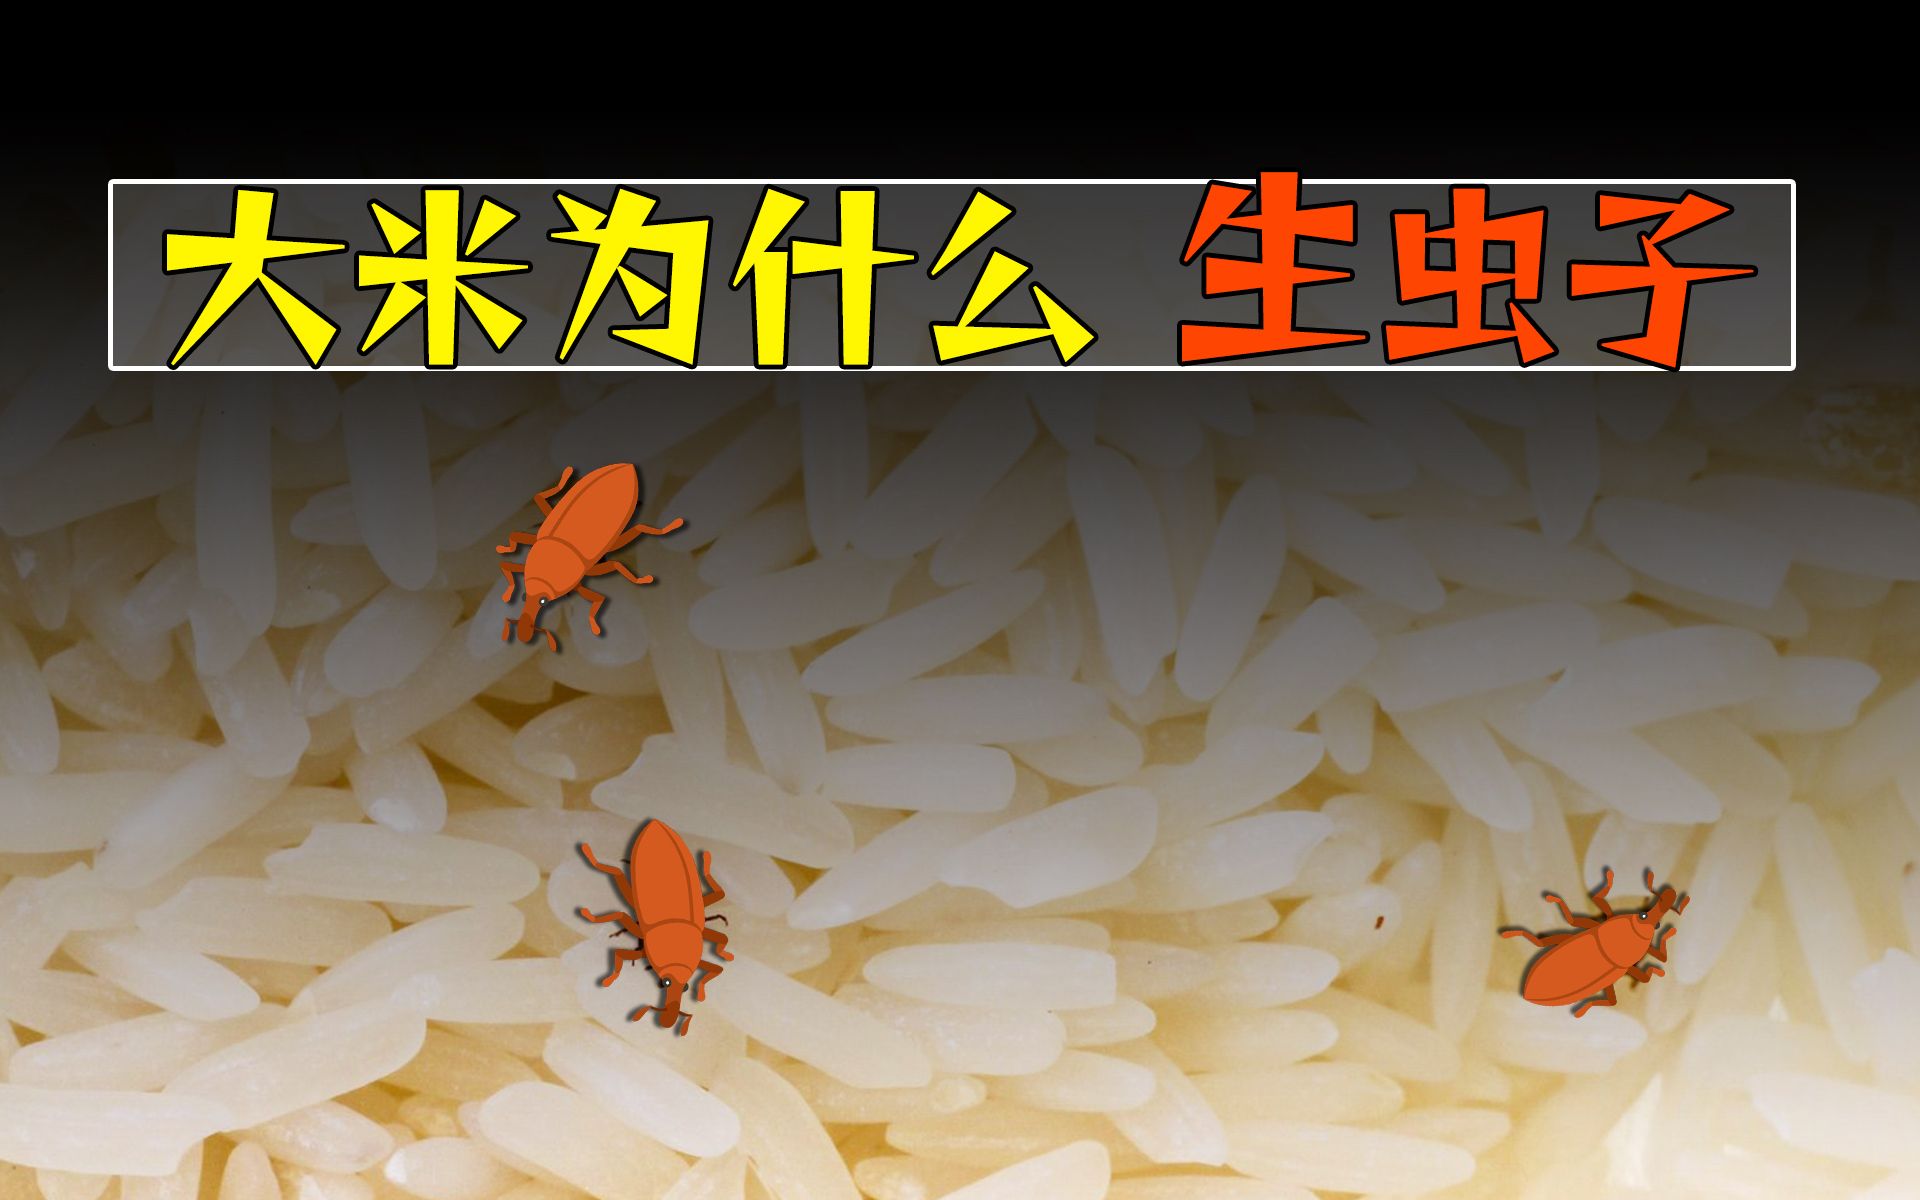 大米长黑虫是什么原因？ —【发财农业网】